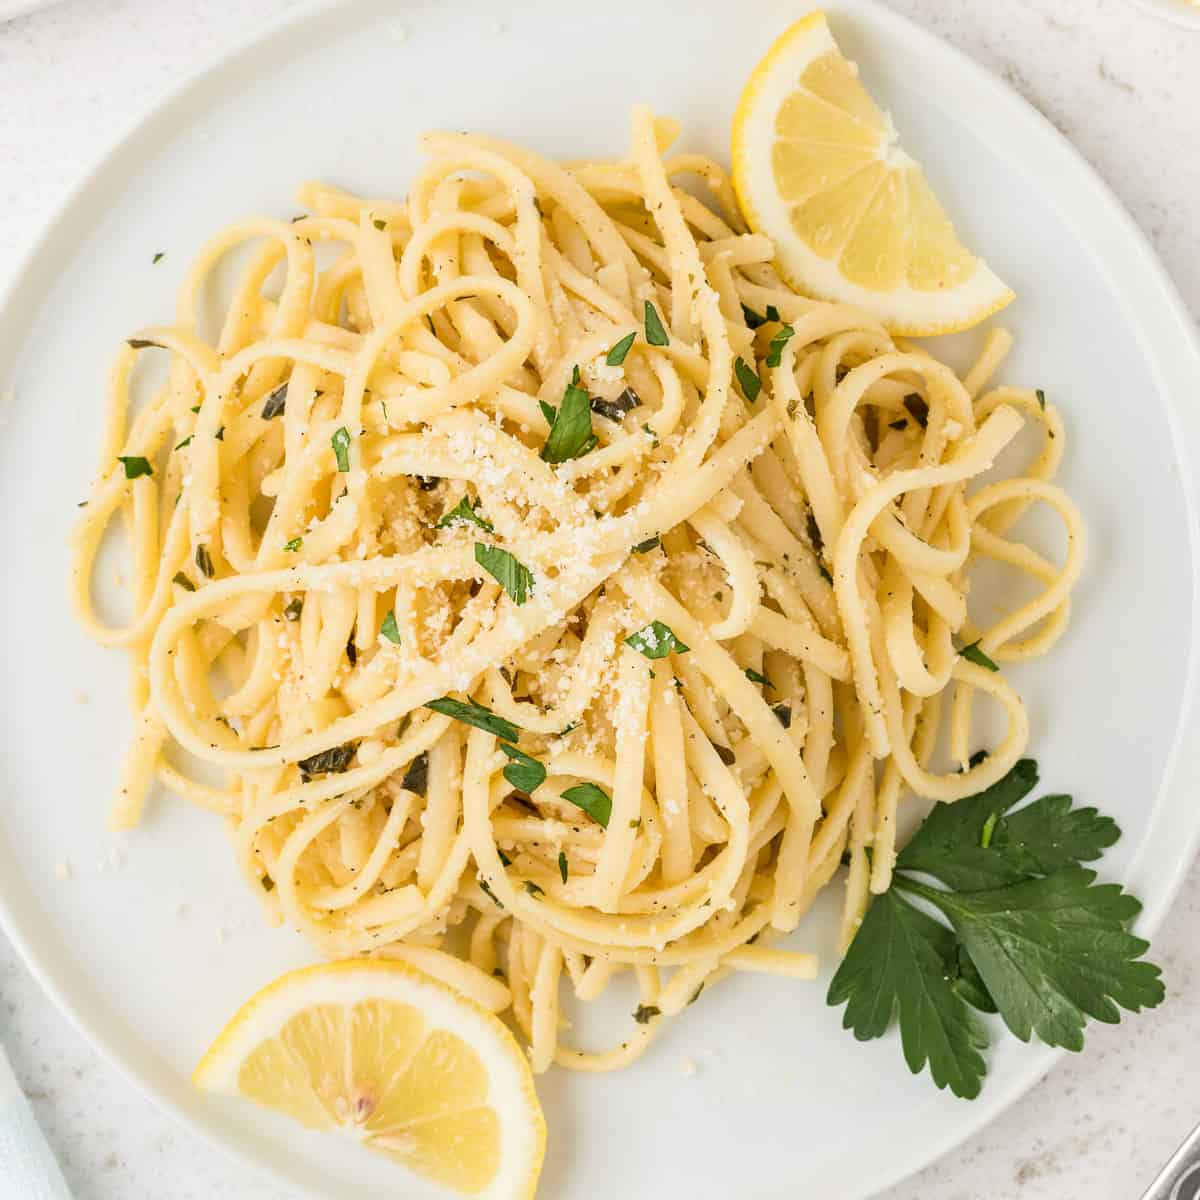 Lemon basil pasta